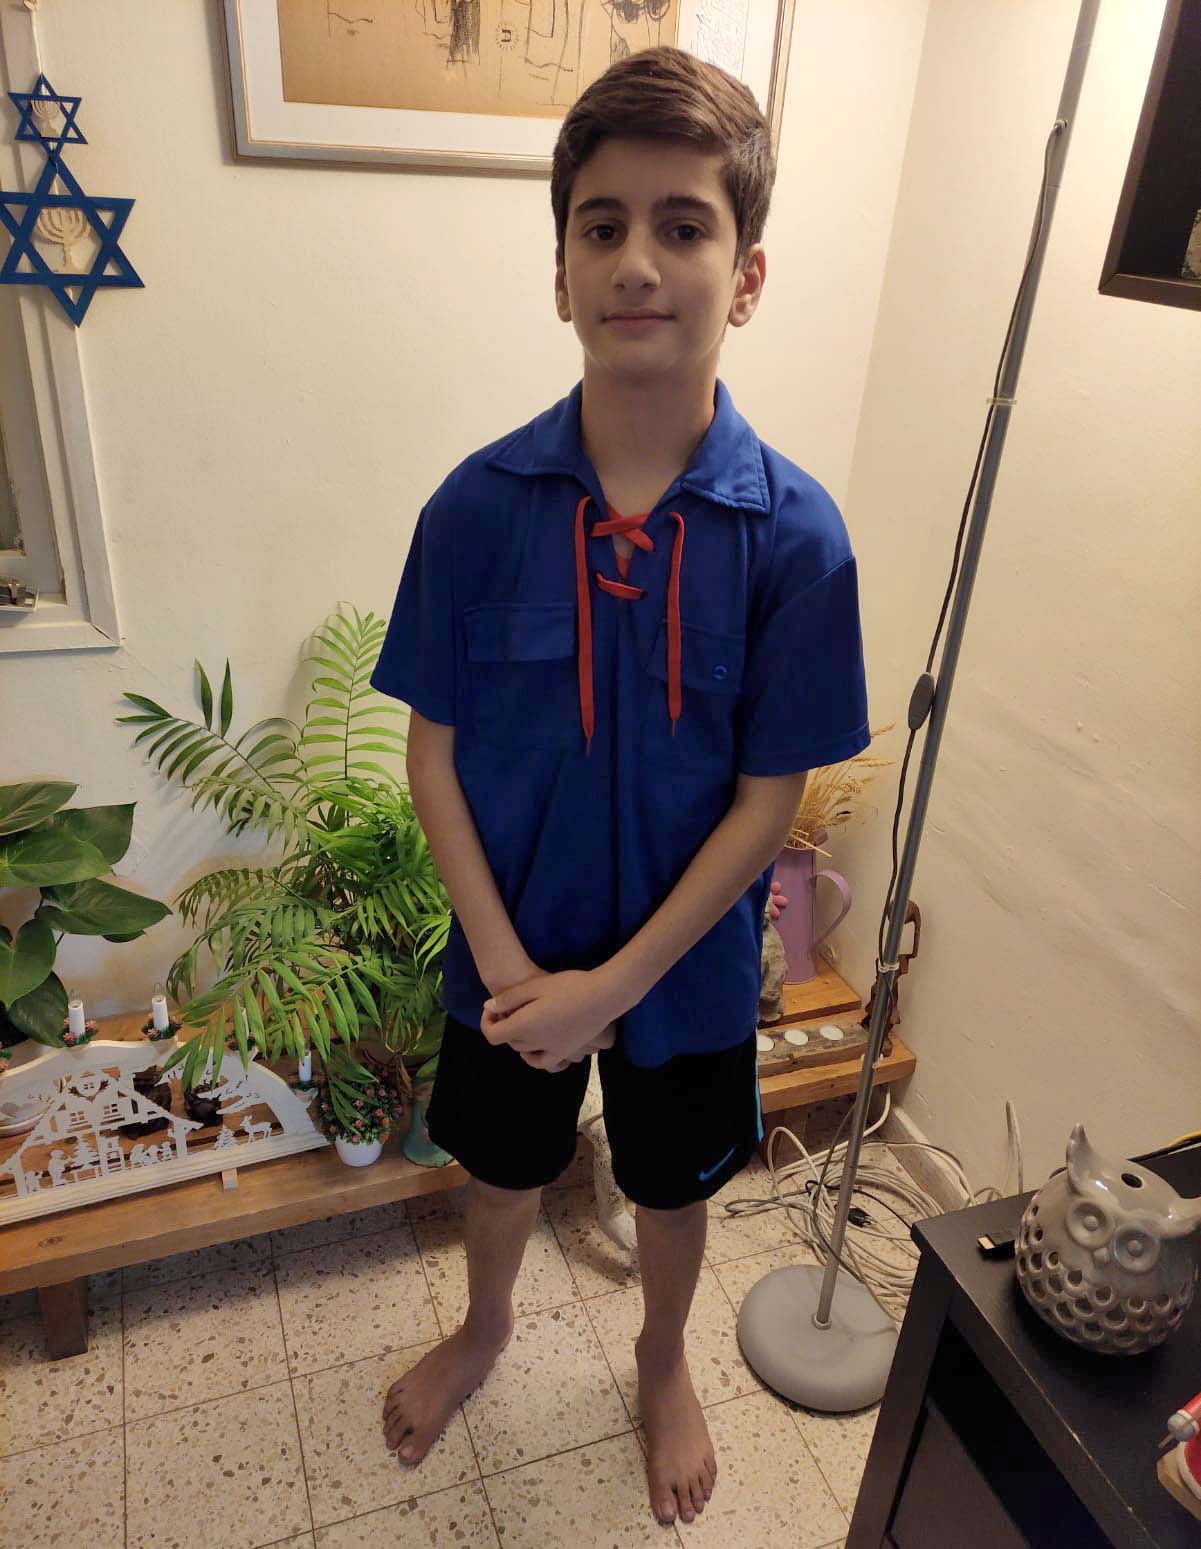 Yiftach Ben David, 12, Kibbutz Ruhama (Photo: private album)